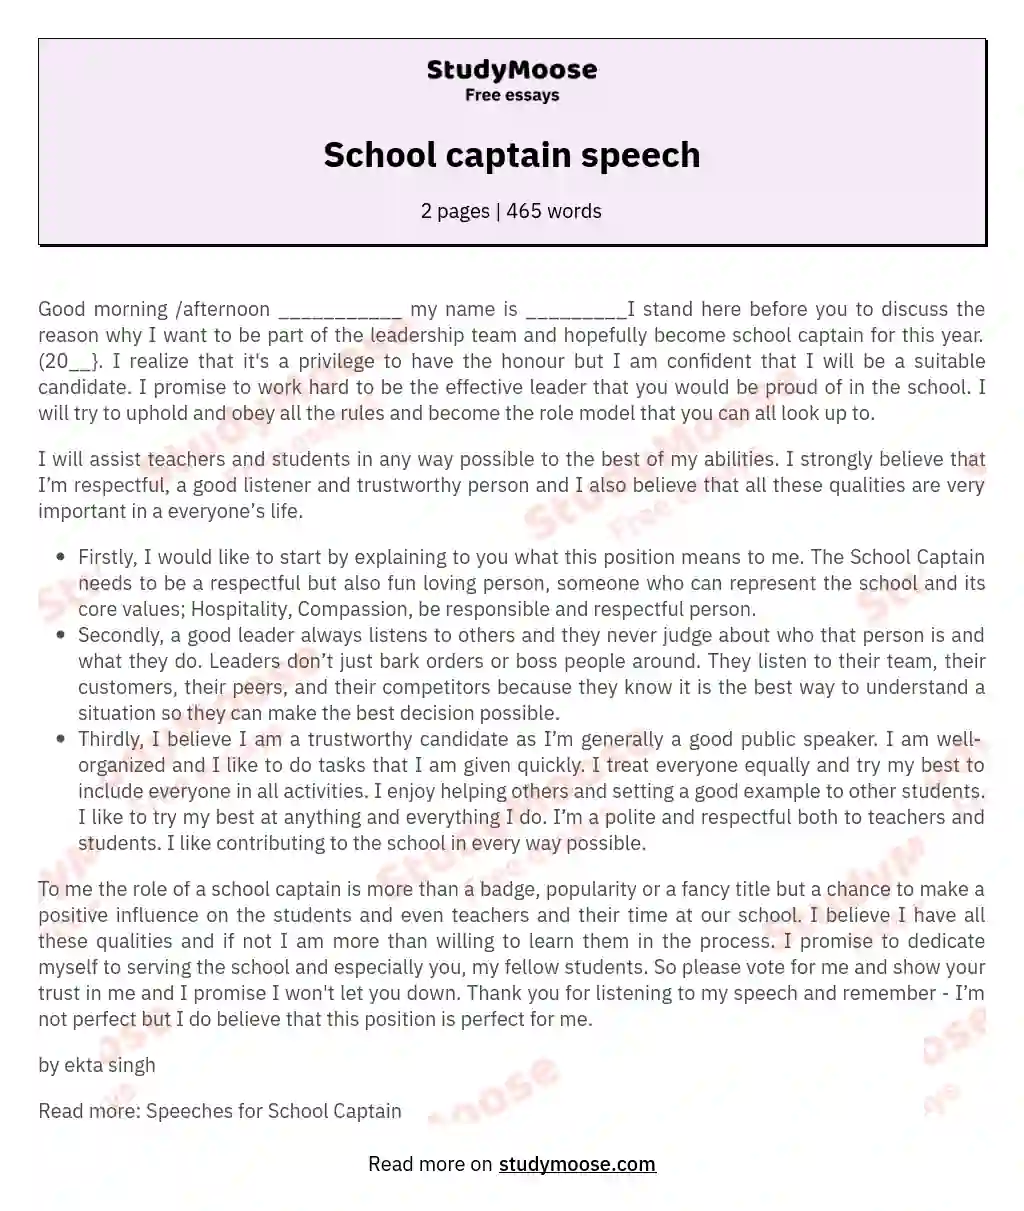 School captain speech essay